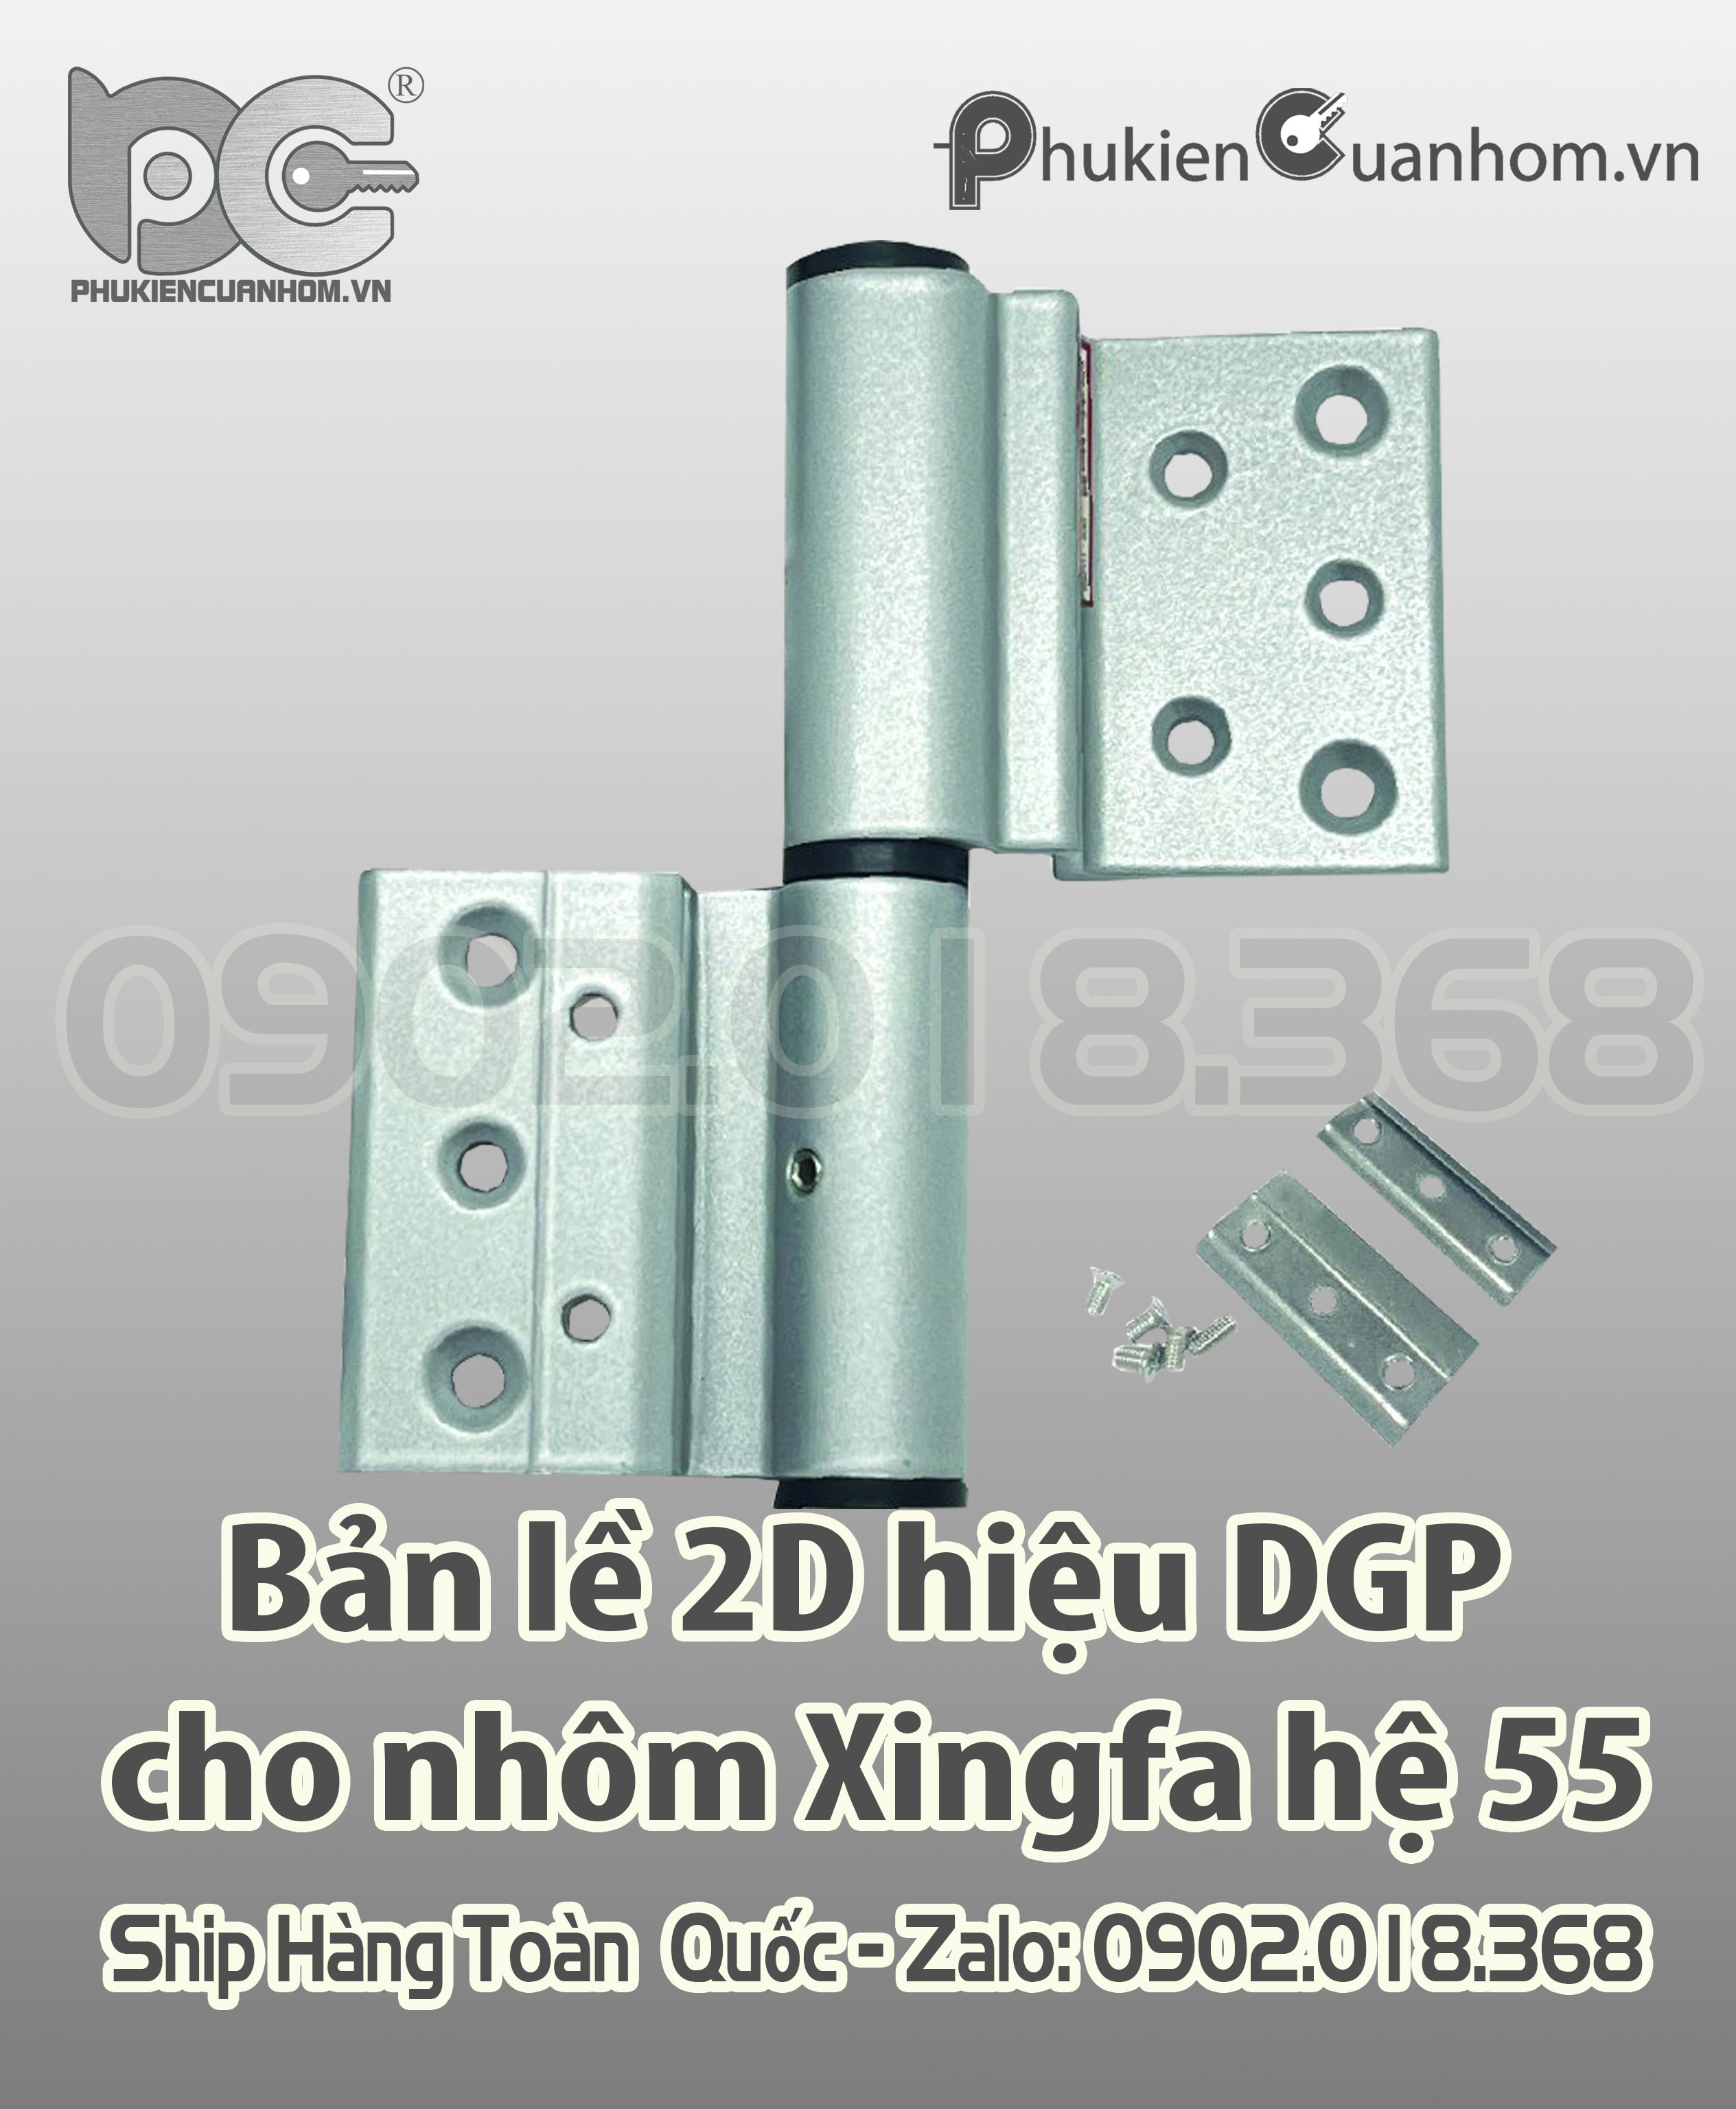 Bản lề 2D cánh khung hiệu DGP cho nhôm Xingfa hệ 55